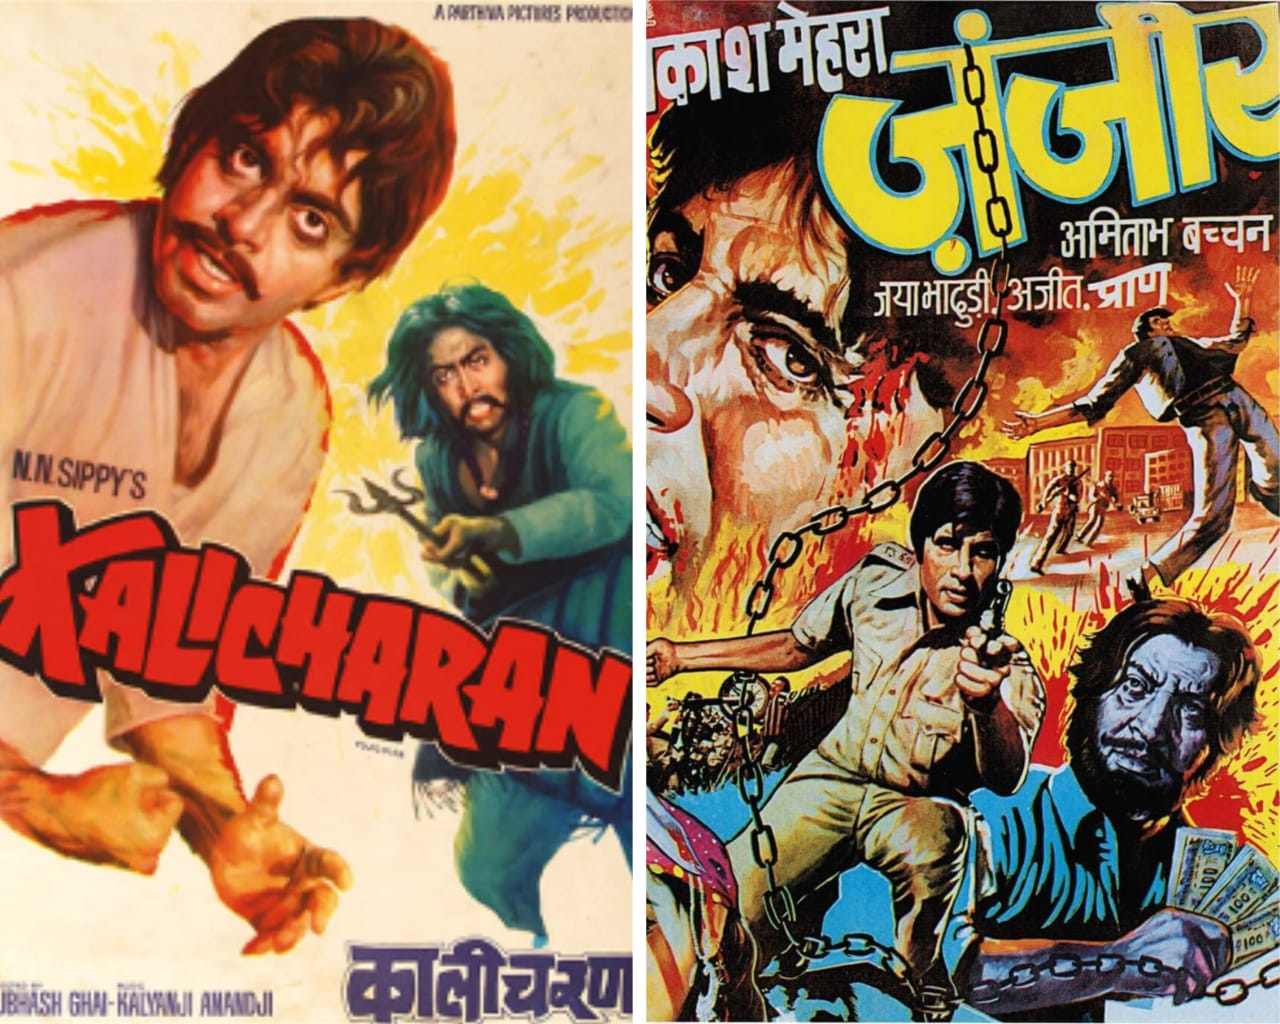 Ajit: The Bollywood hero who turned villain